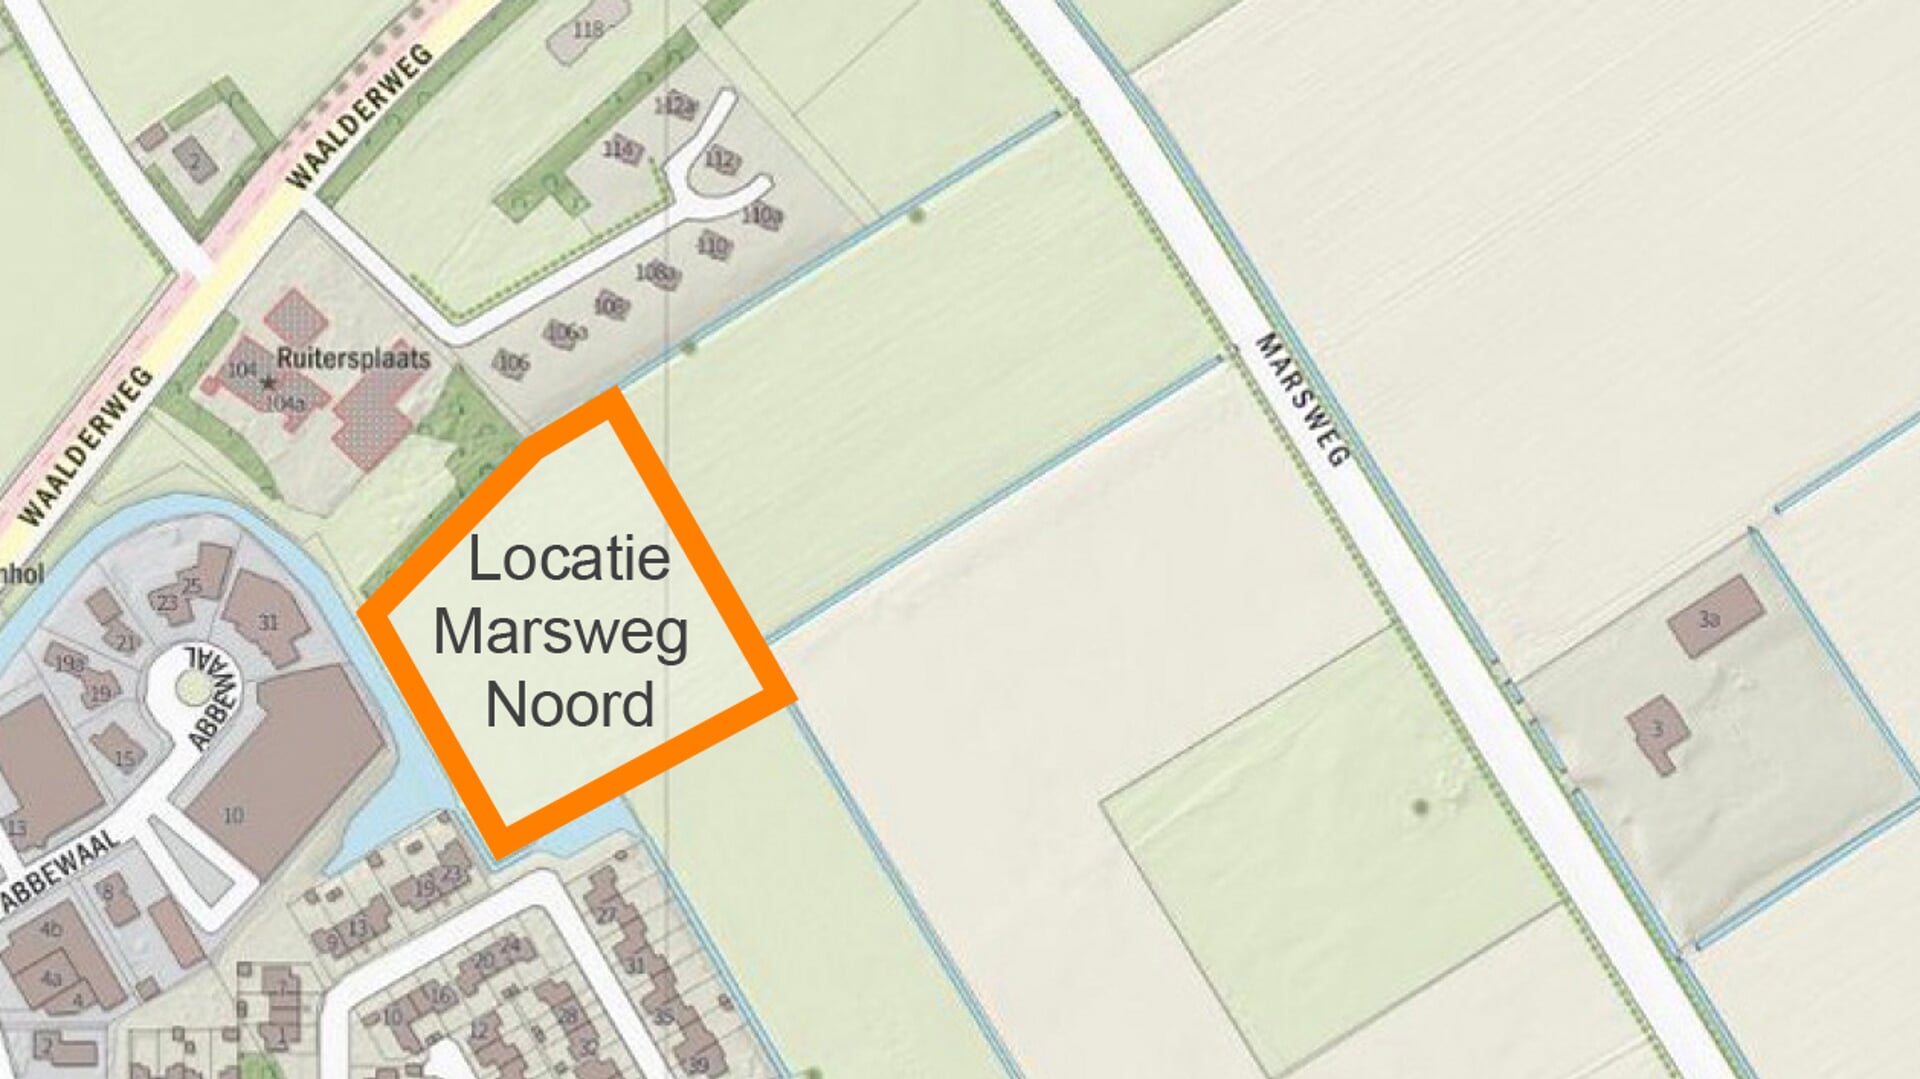 Het indicatief plangebied voor 90 woningen aan de Marsweg Noord.